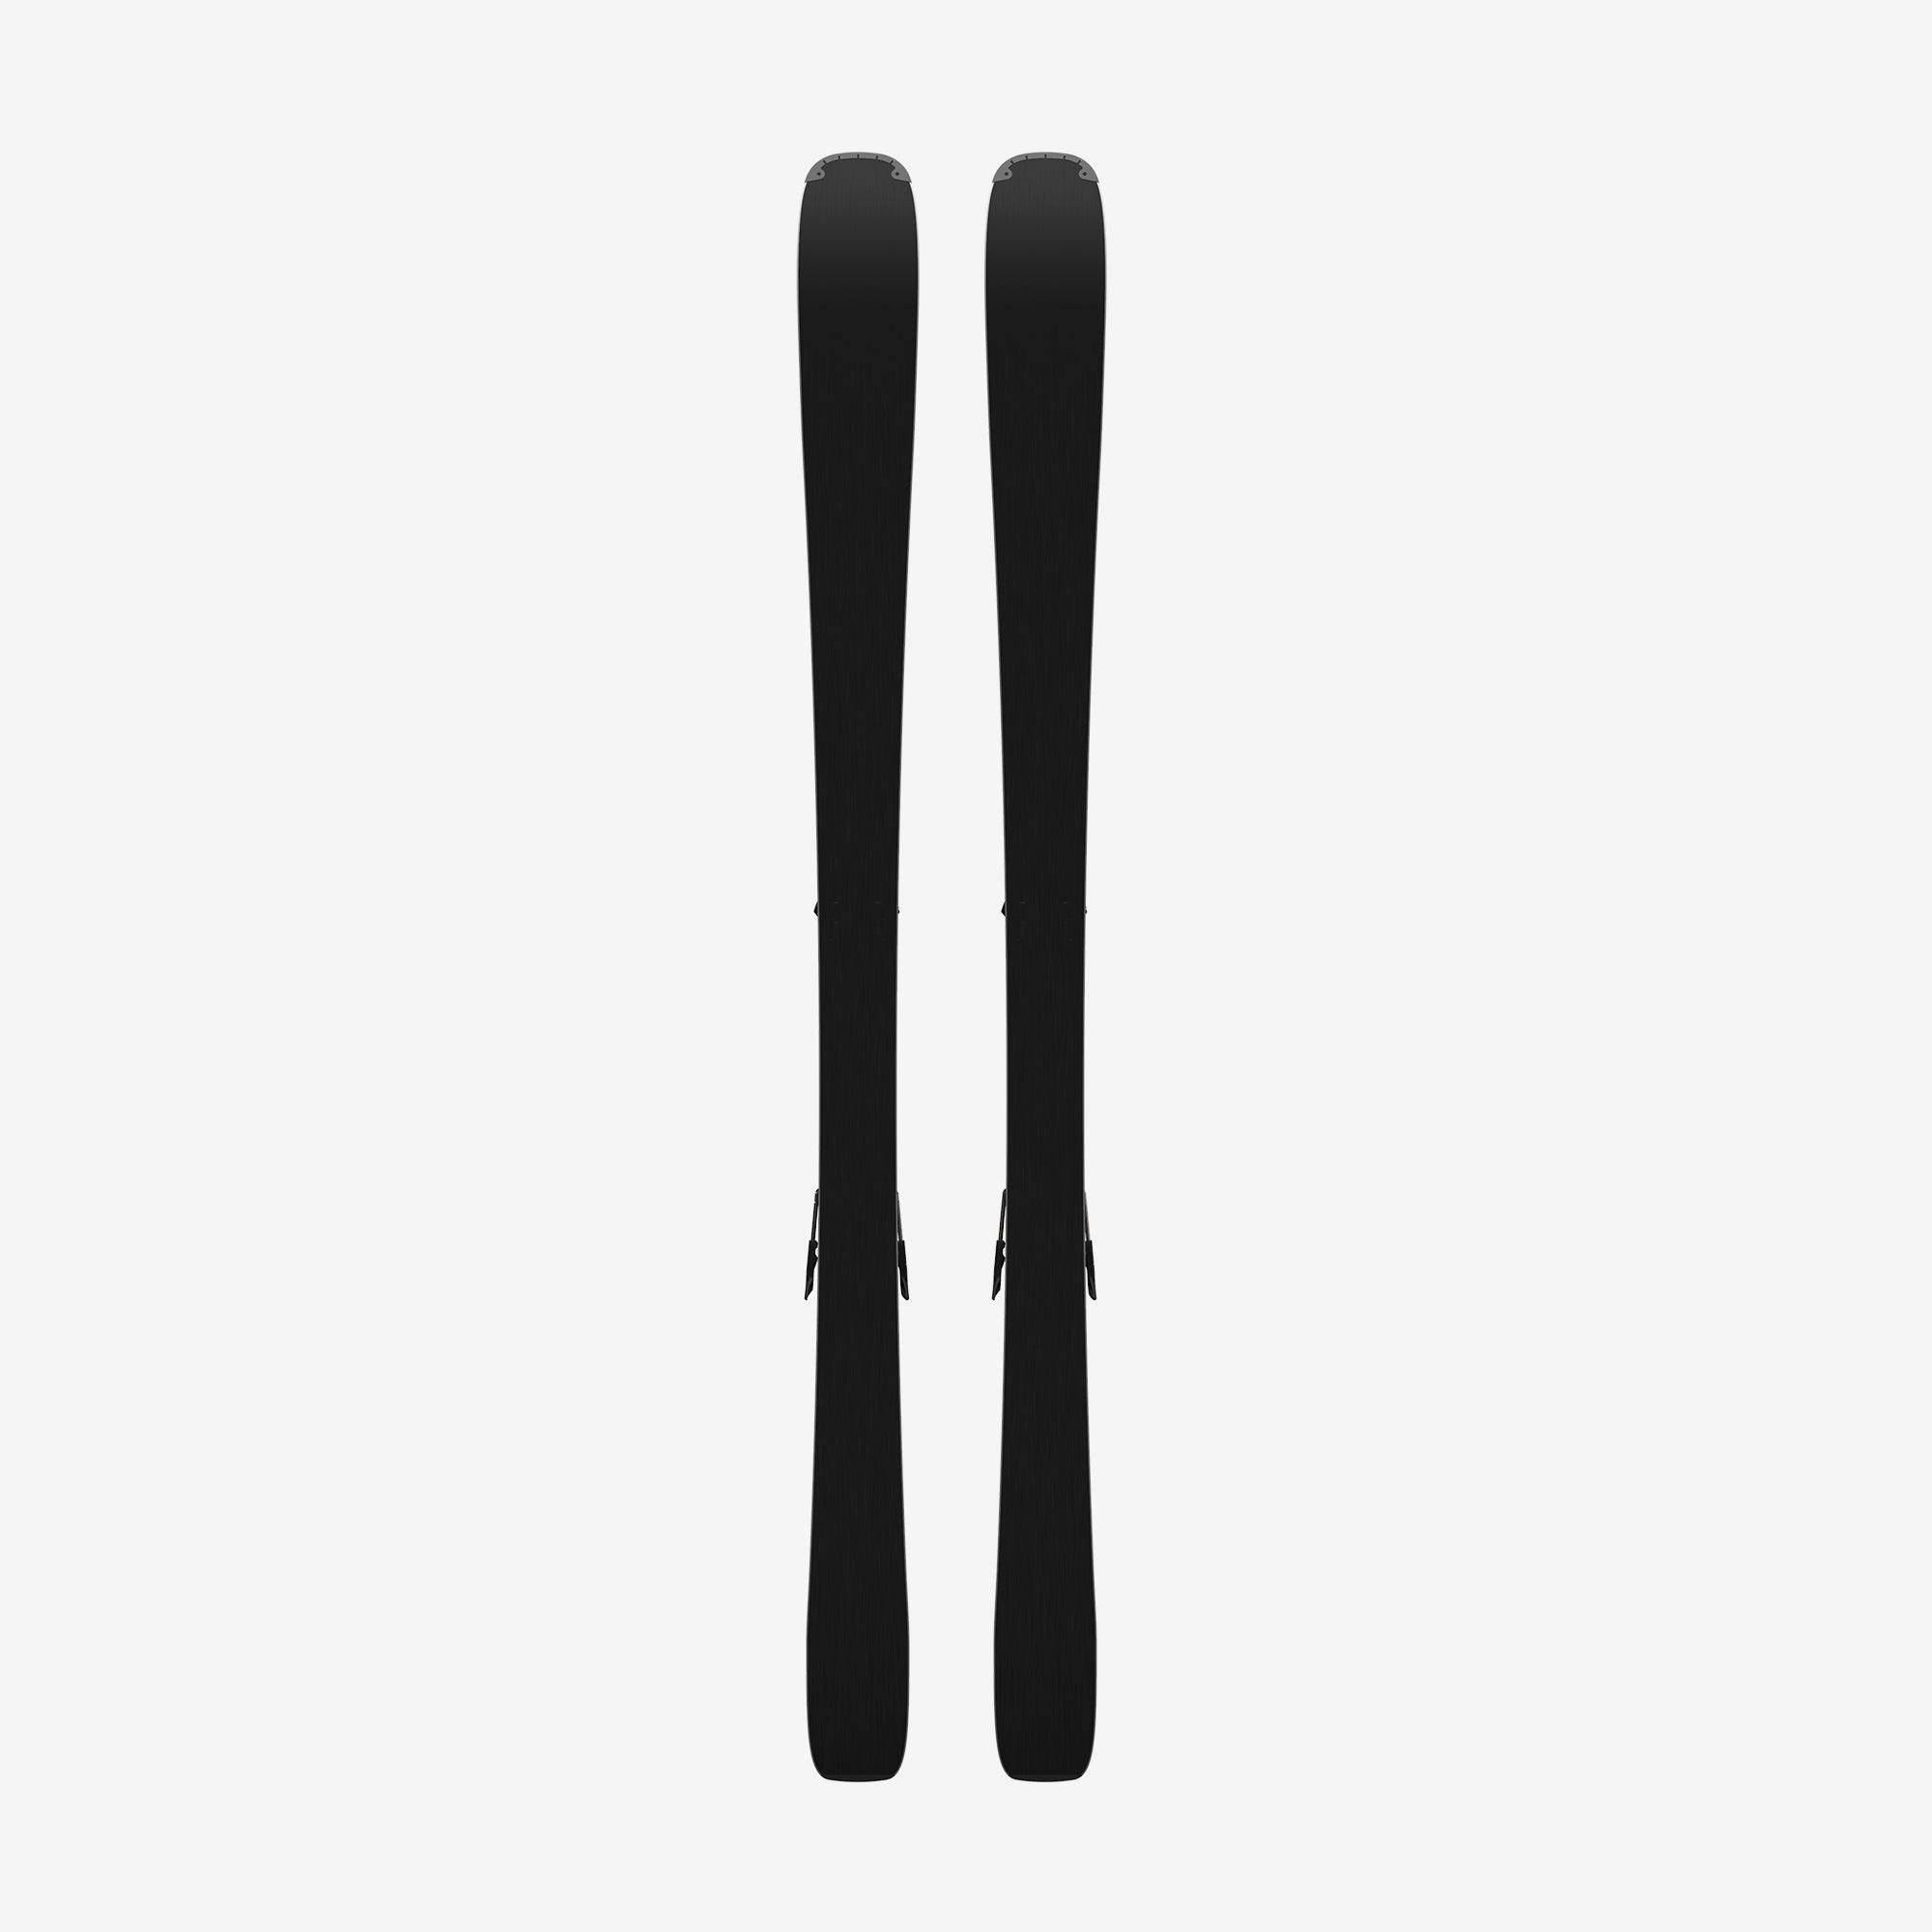 Salomon Stance 80 Skis + M11 GW Bindings · 2022 · 169 cm